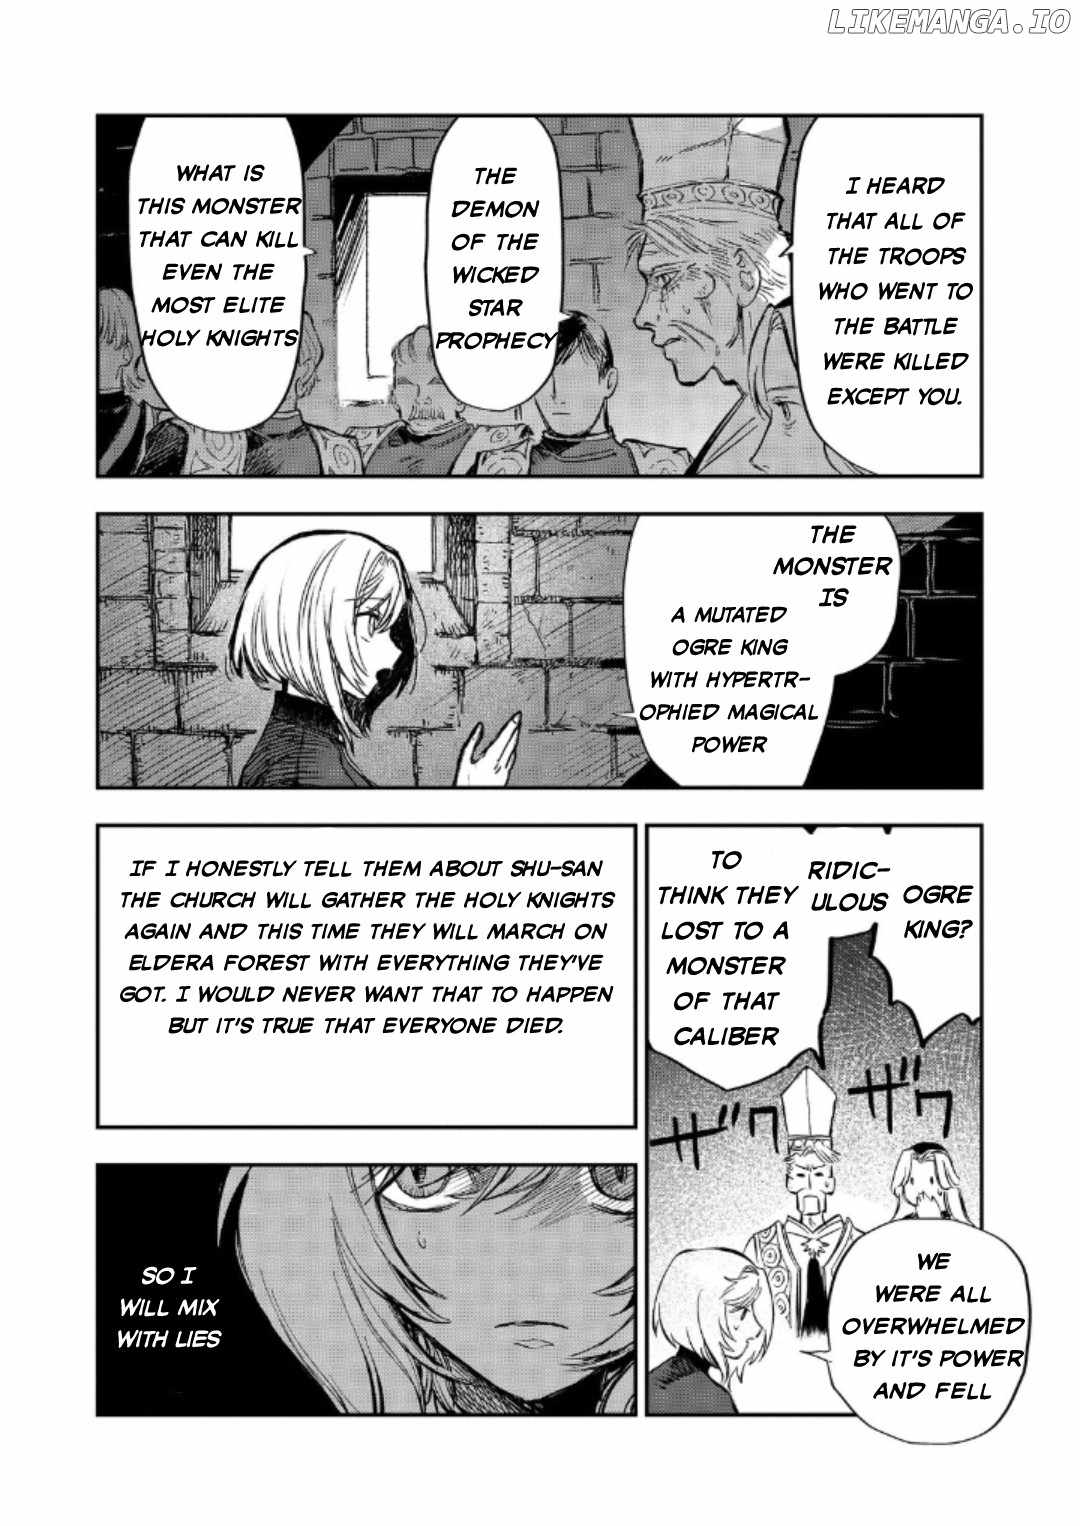 Meiou-sama ga Tooru no desu yo! Chapter 13-eng-li - Page 3